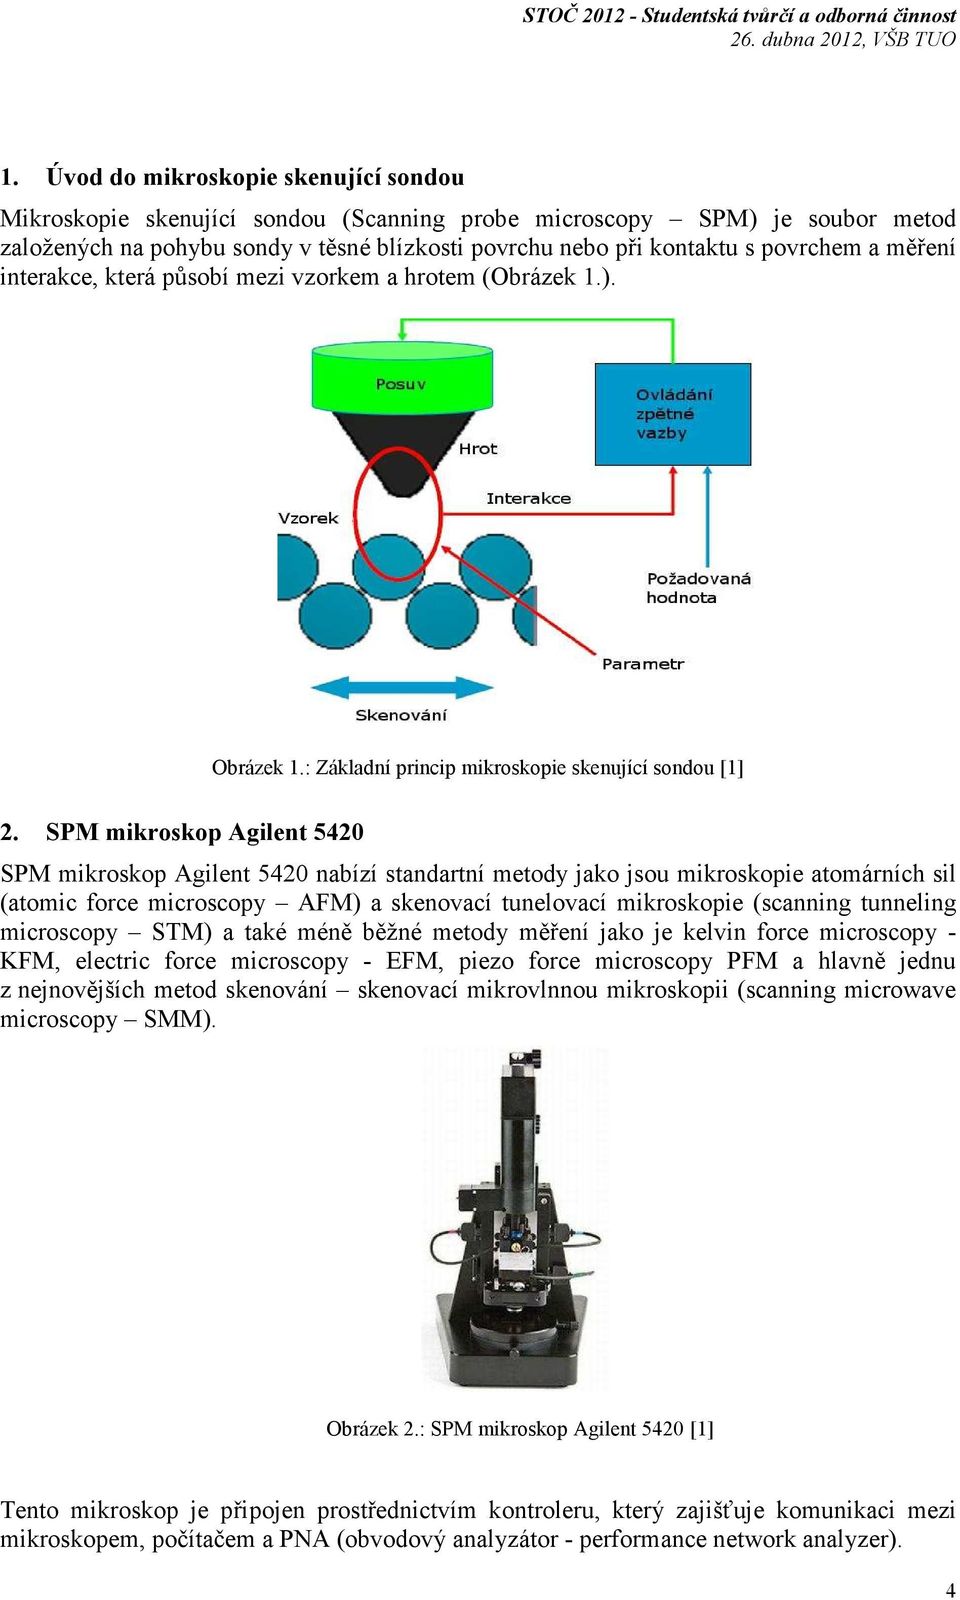 SPM mikroskop Agilent 5420 SPM mikroskop Agilent 5420 nabízí standartní metody jako jsou mikroskopie atomárních sil (atomic force microscopy AFM) a skenovací tunelovací mikroskopie (scanning